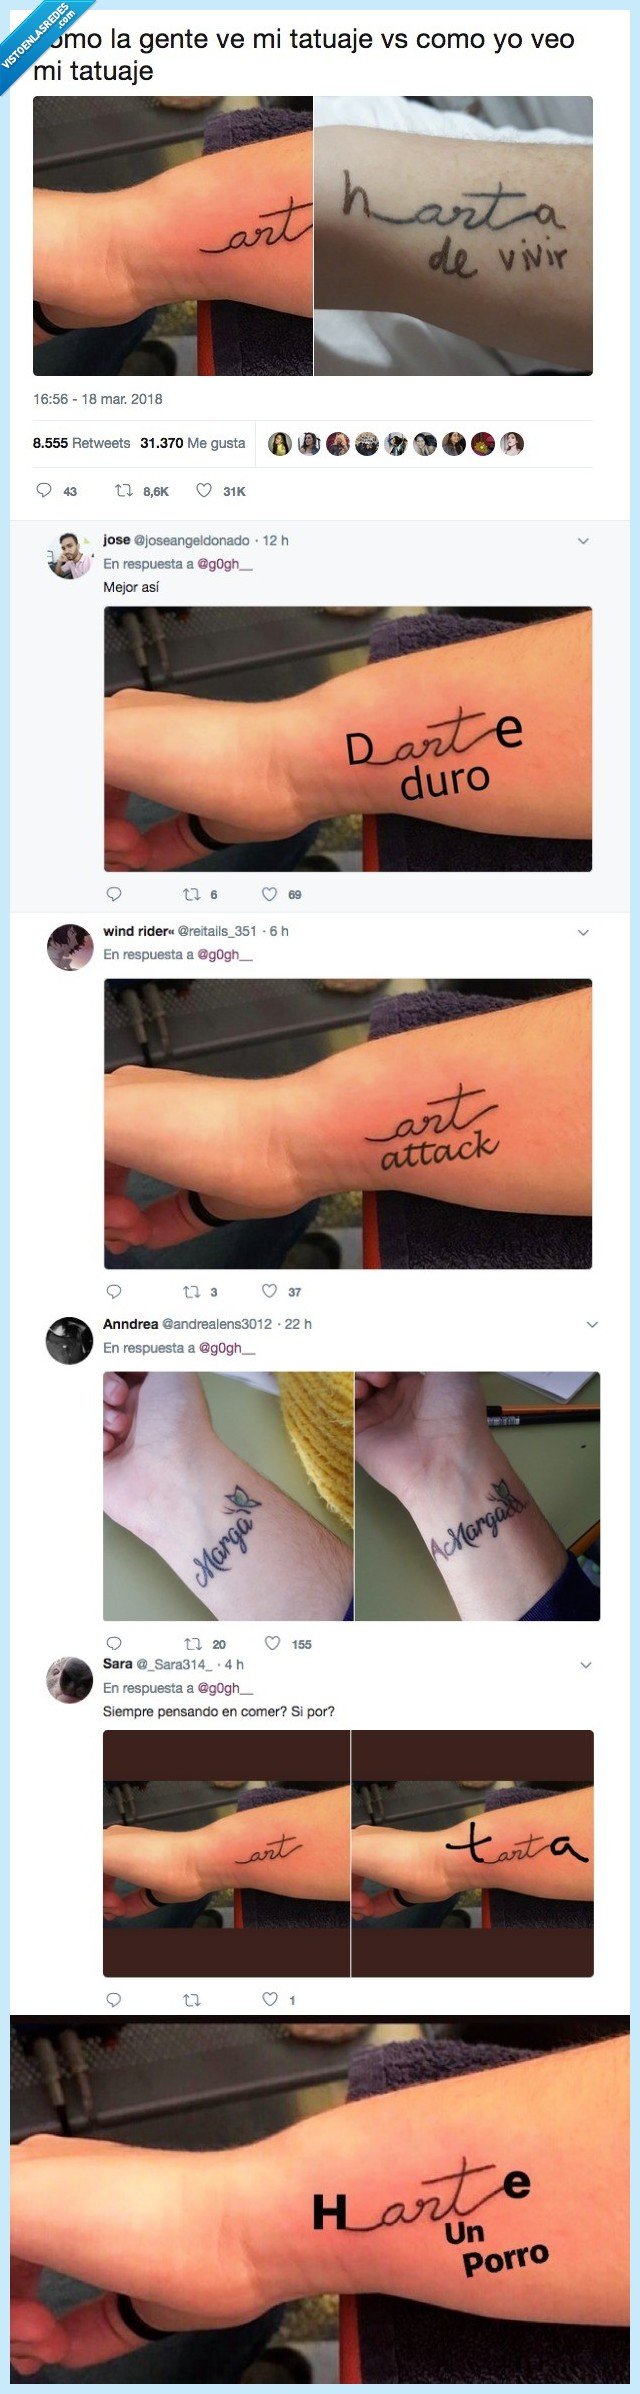 trollear,tatuaje,twitter